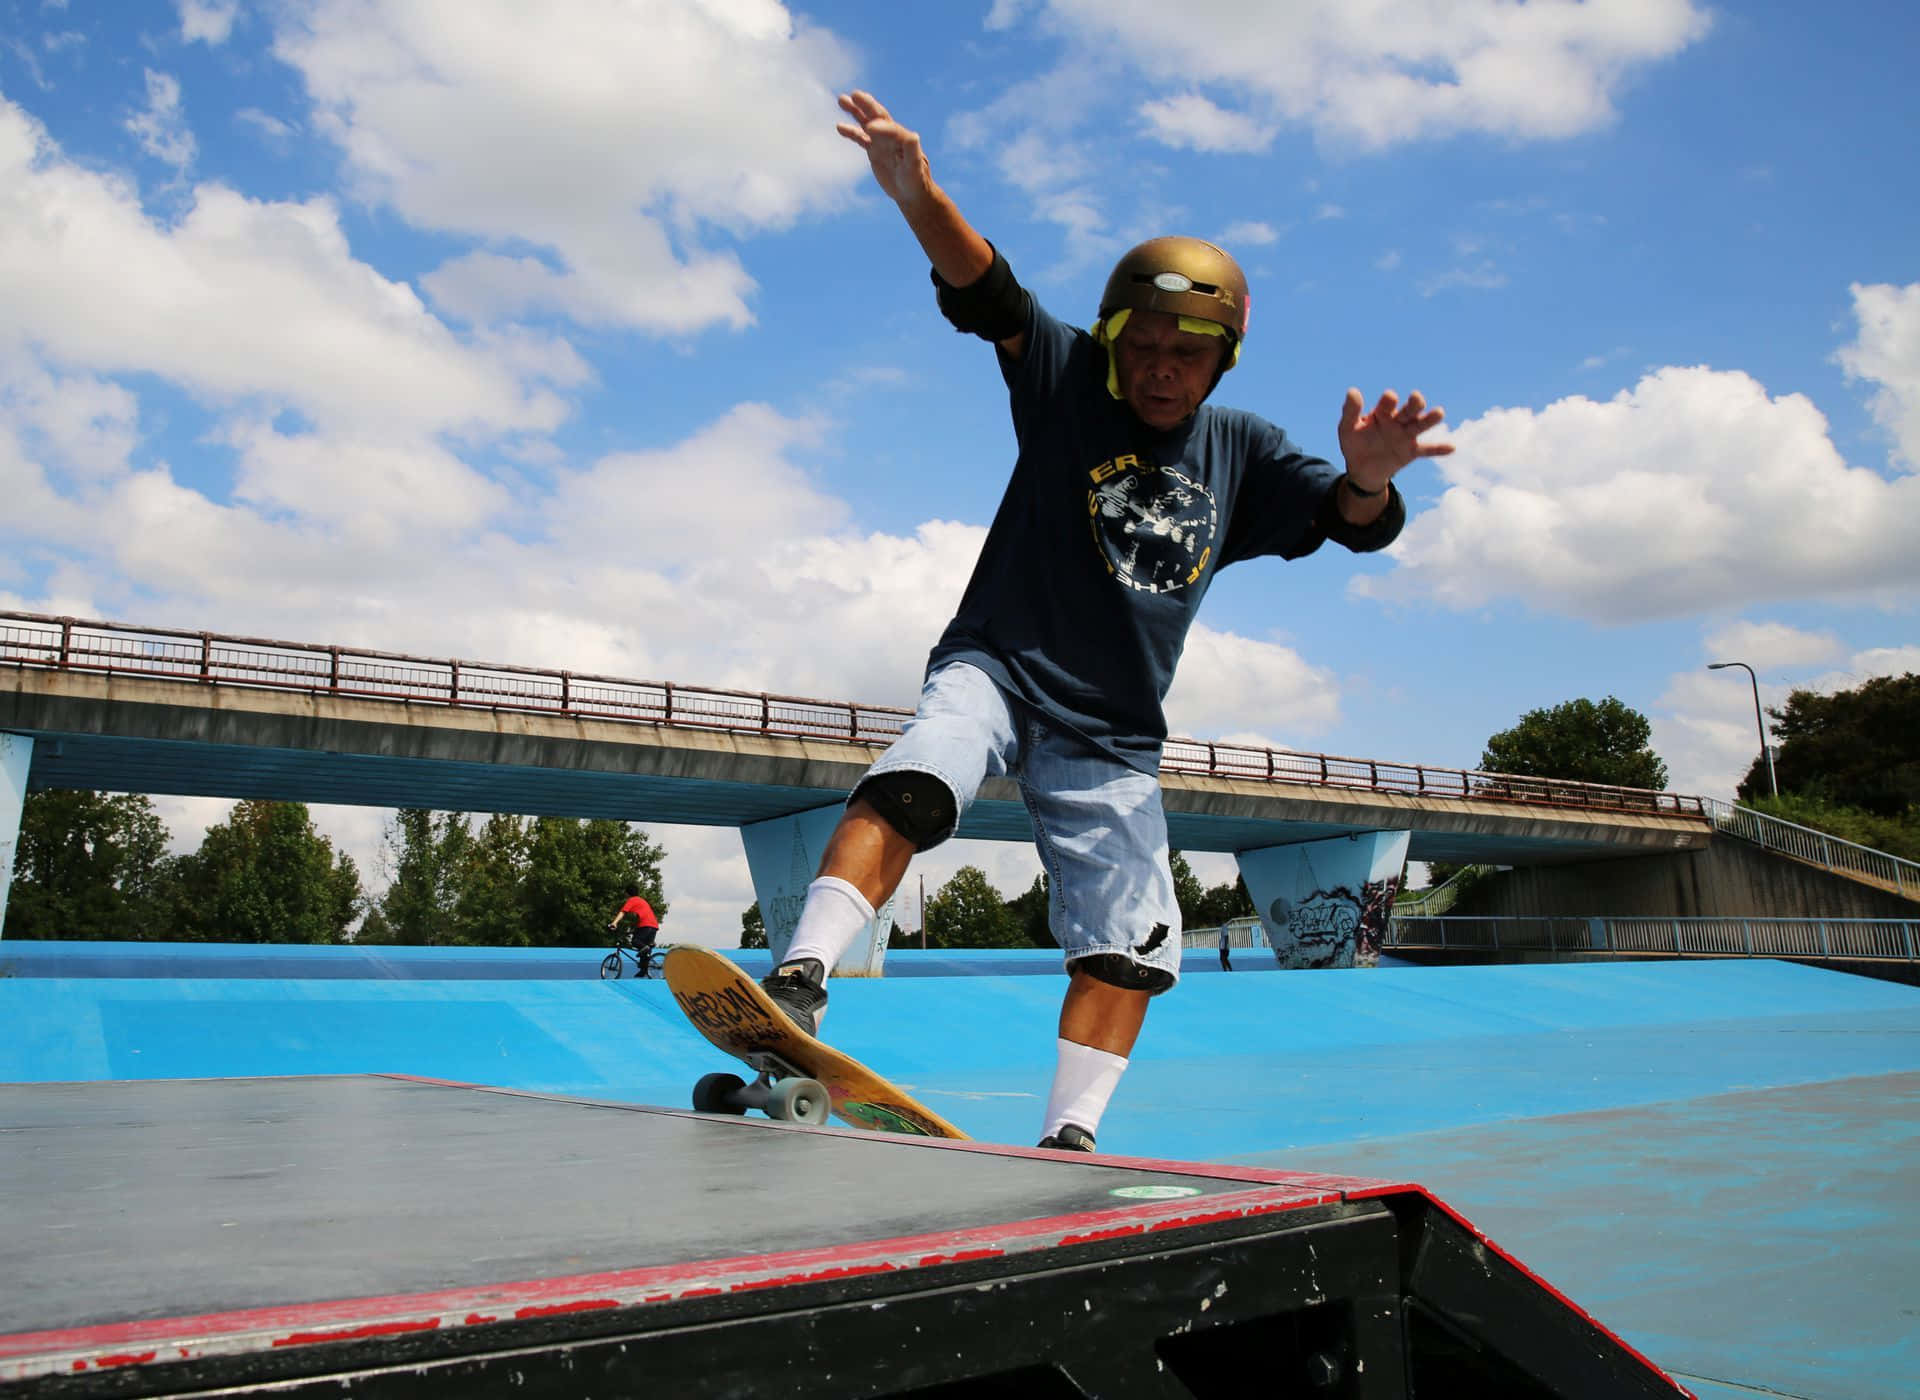 Einmann Skateboardet Auf Einer Rampe.